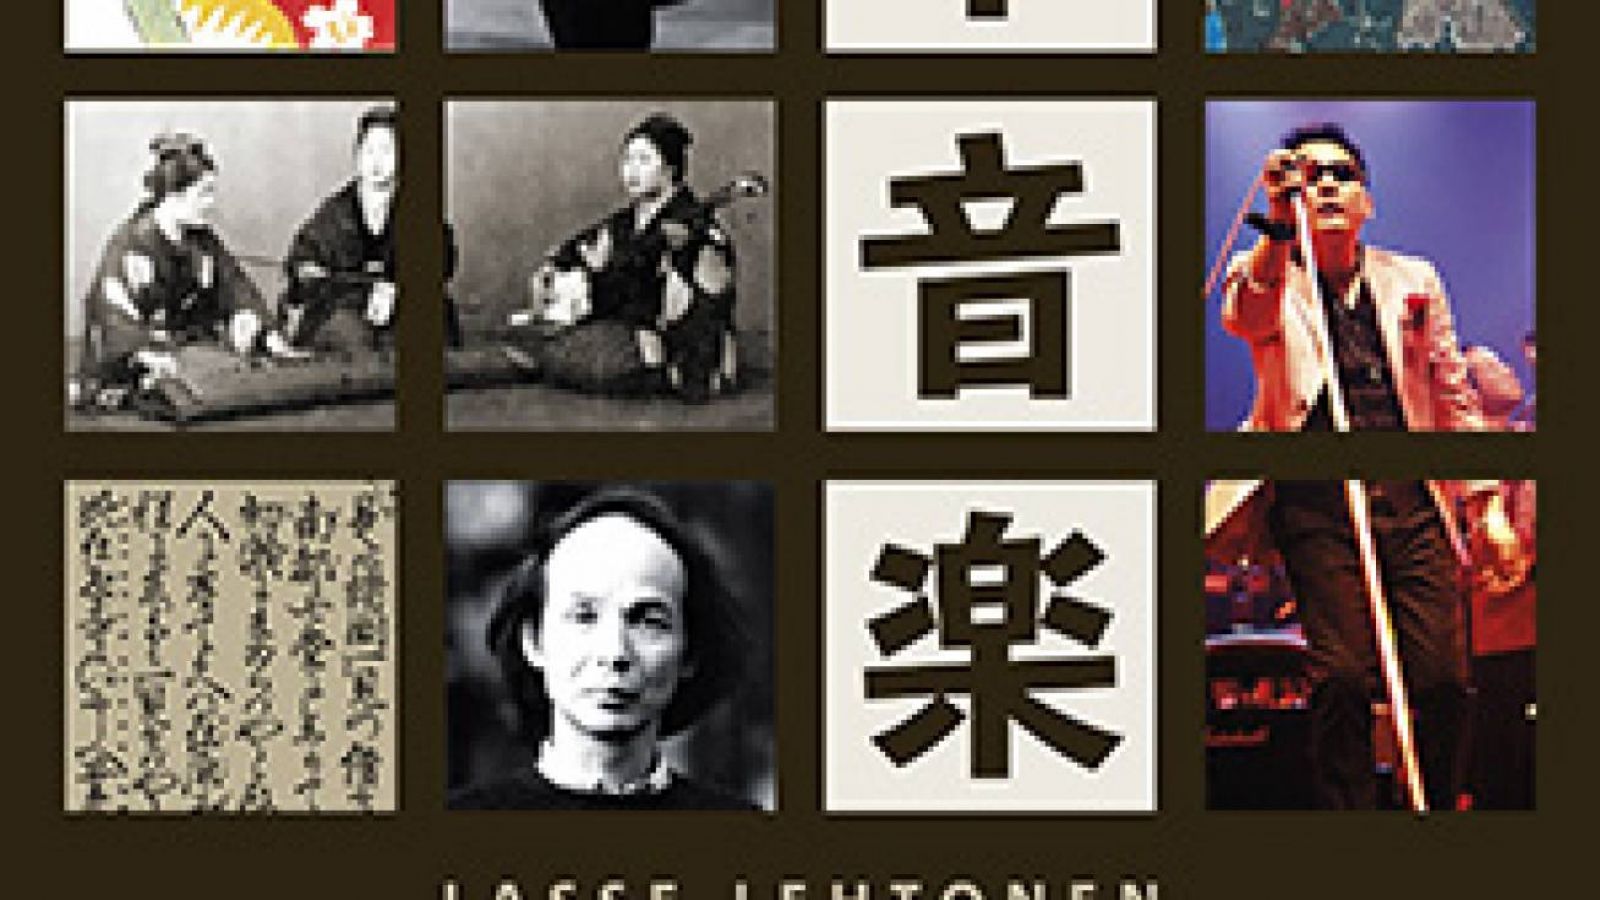 Japanilaisesta musiikkikulttuurista julkaistaan kattava kirja © Gaudeamus. All Rights Reserved.